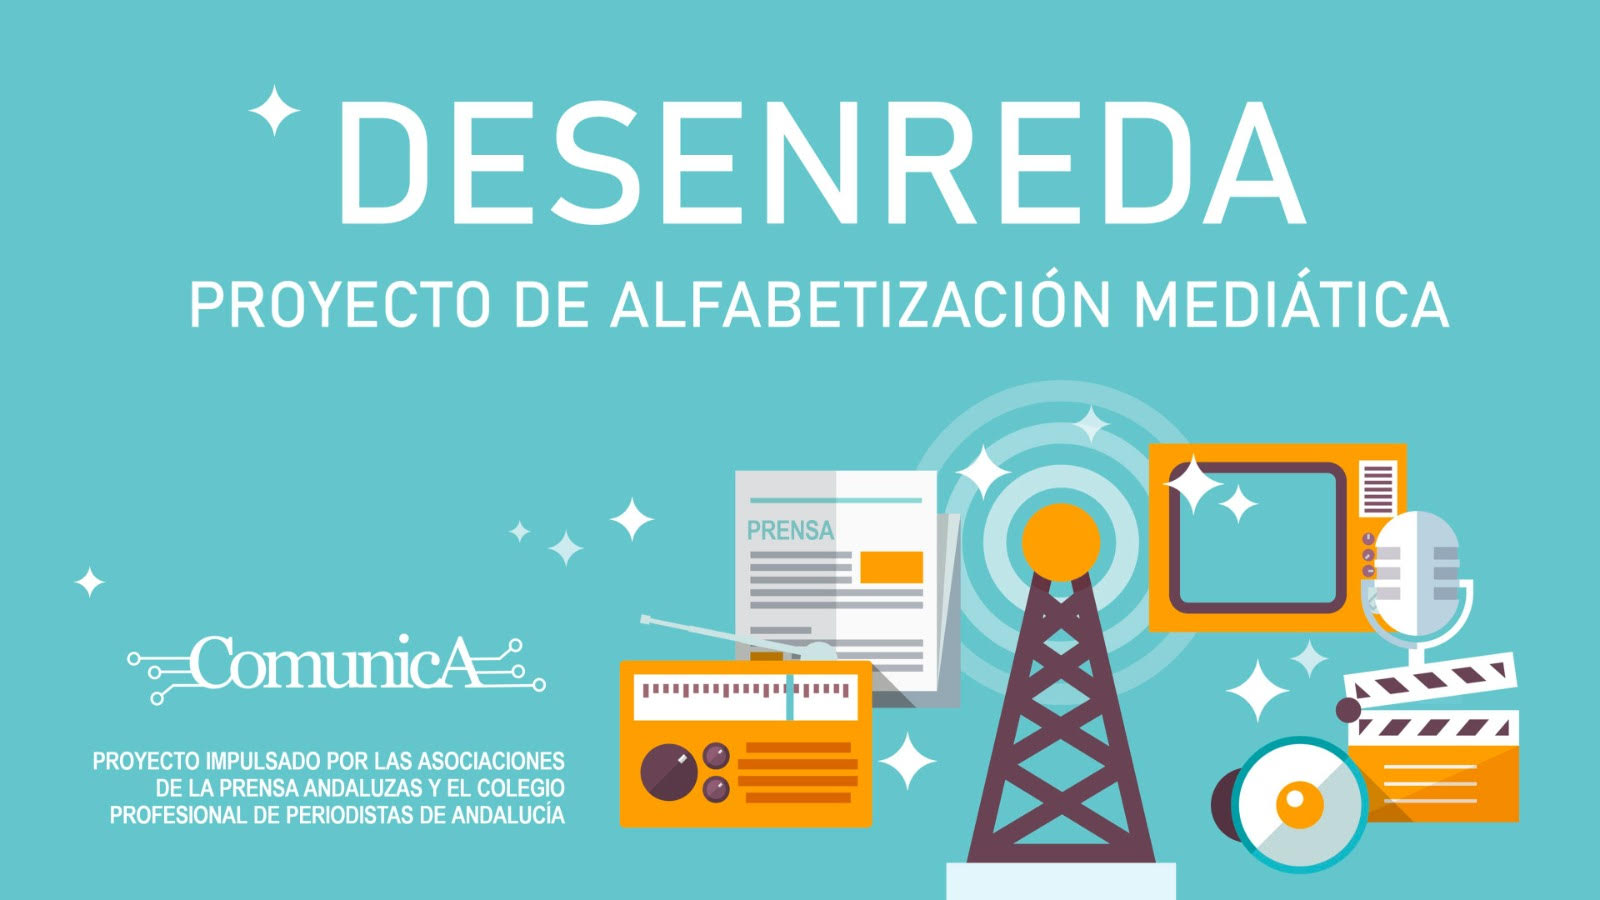 Un total de 40 centros andaluces de Secundaria recibirán formación sobre alfabetización mediática impartida por periodistas